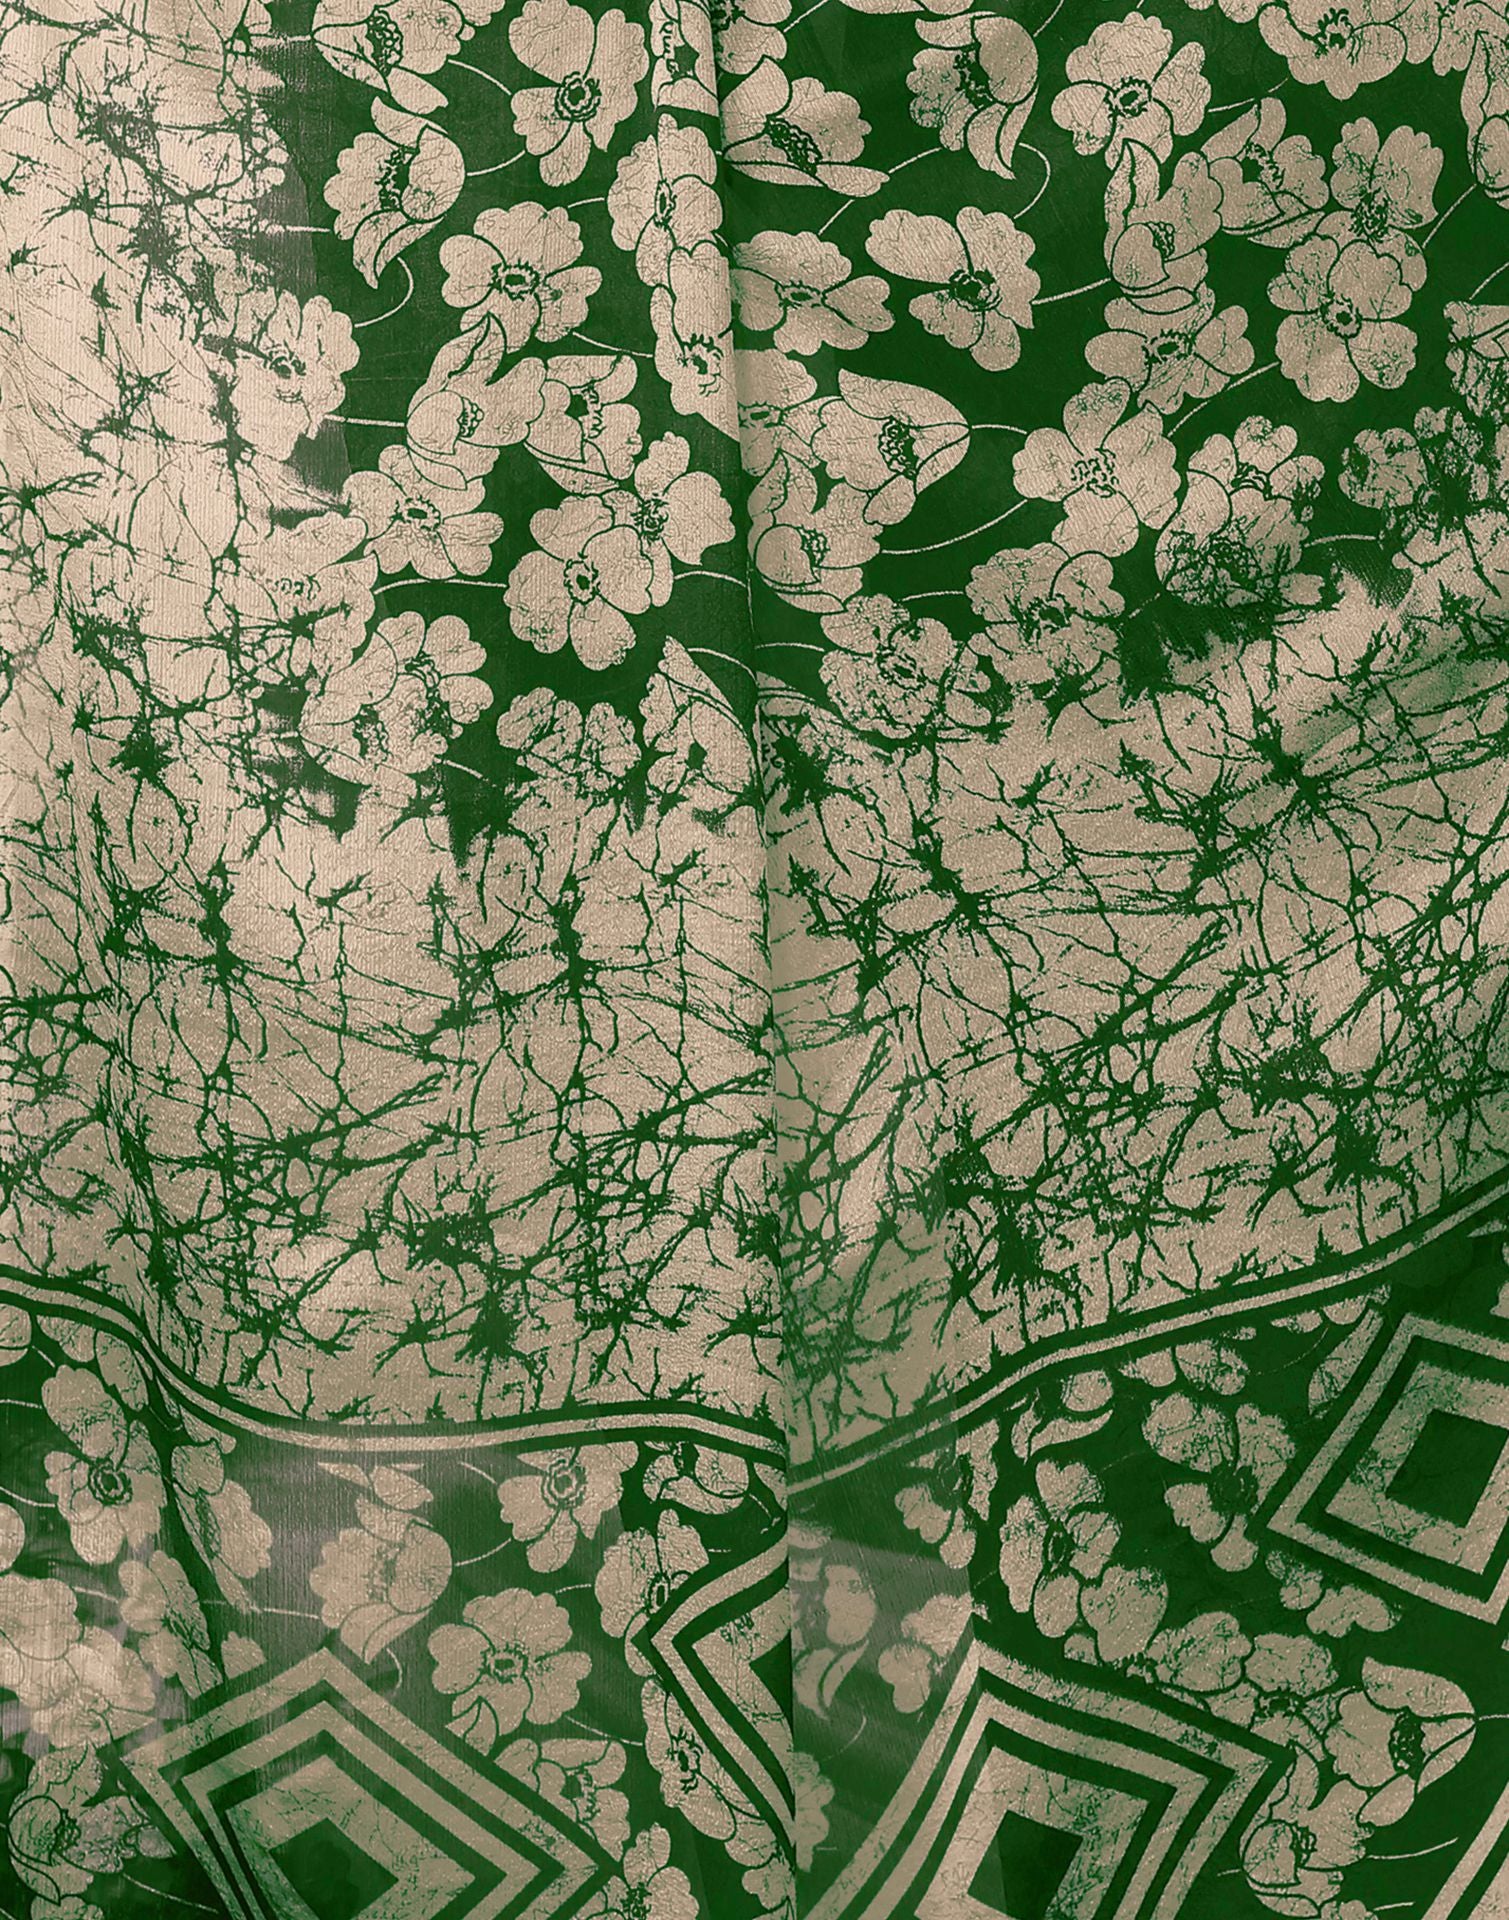 Green Chiffon Printed Saree | Leemboodi